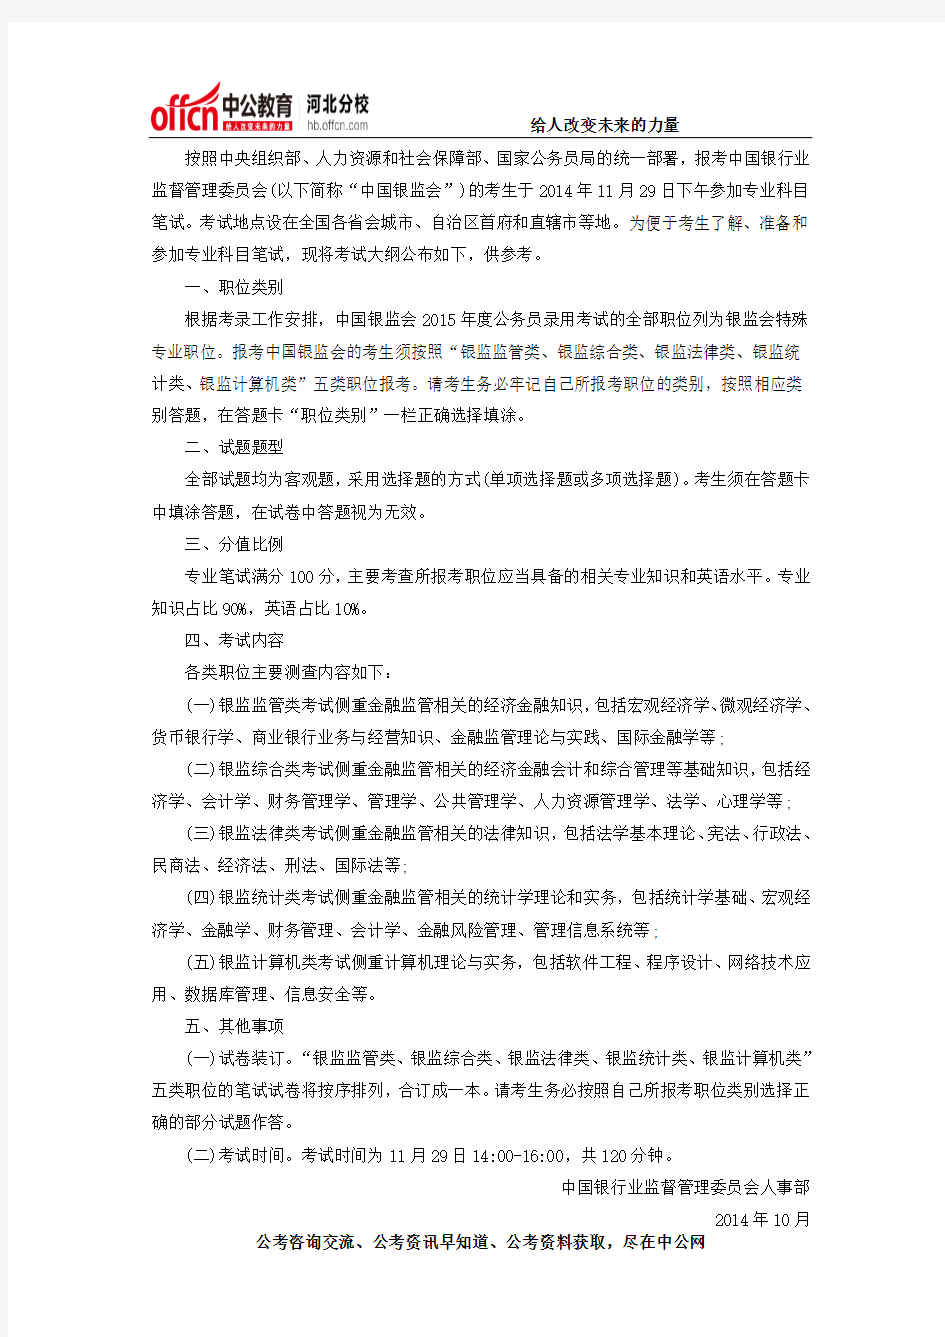 中国银监会2015年度公务员录用考试专业科目笔试考试大纲